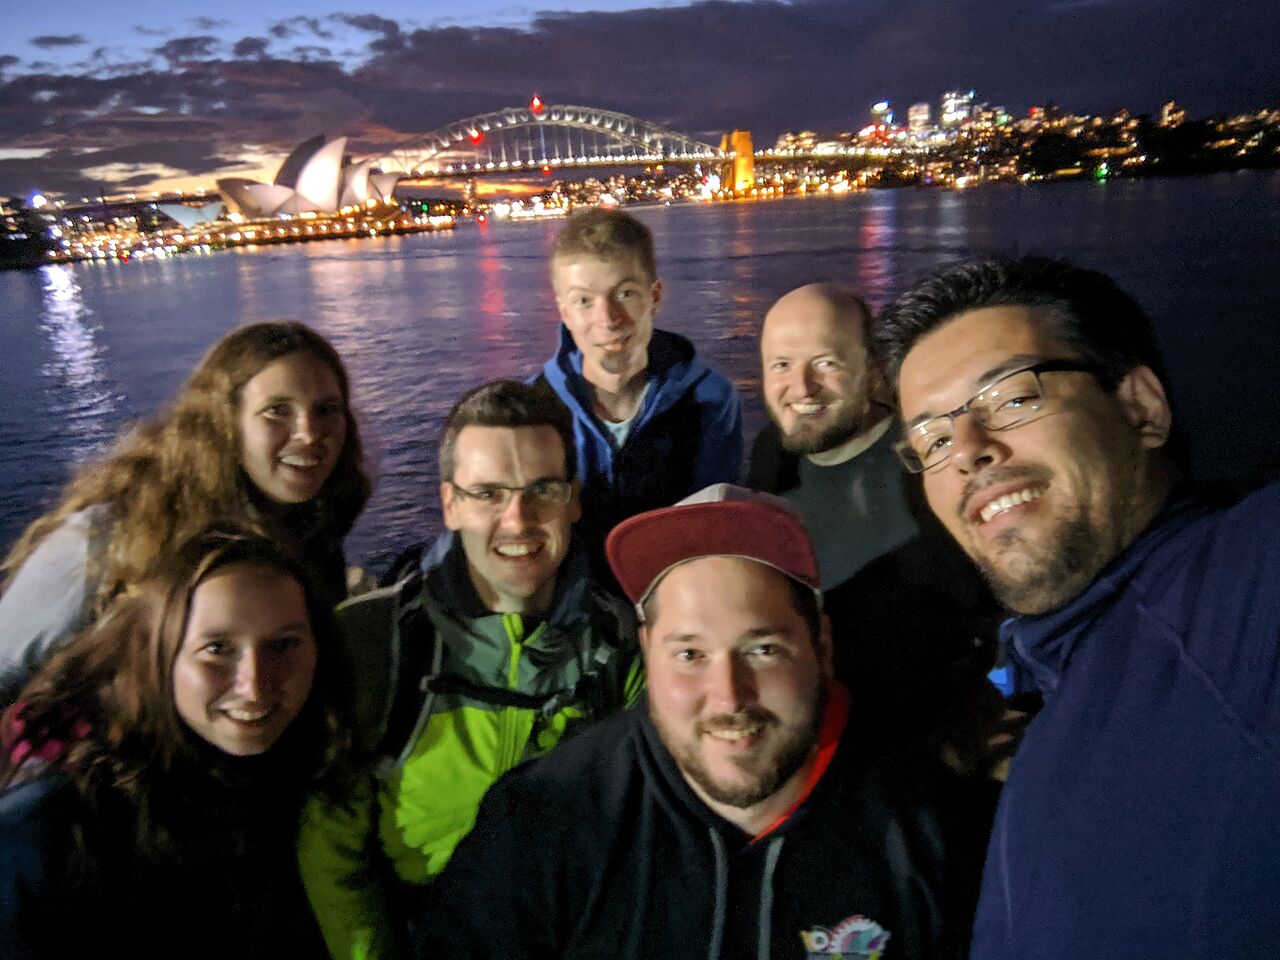 Das Nao-Team down under, vor der nächtlichen Skyline von Sydney. (Foto: Nao-Team HTWK)